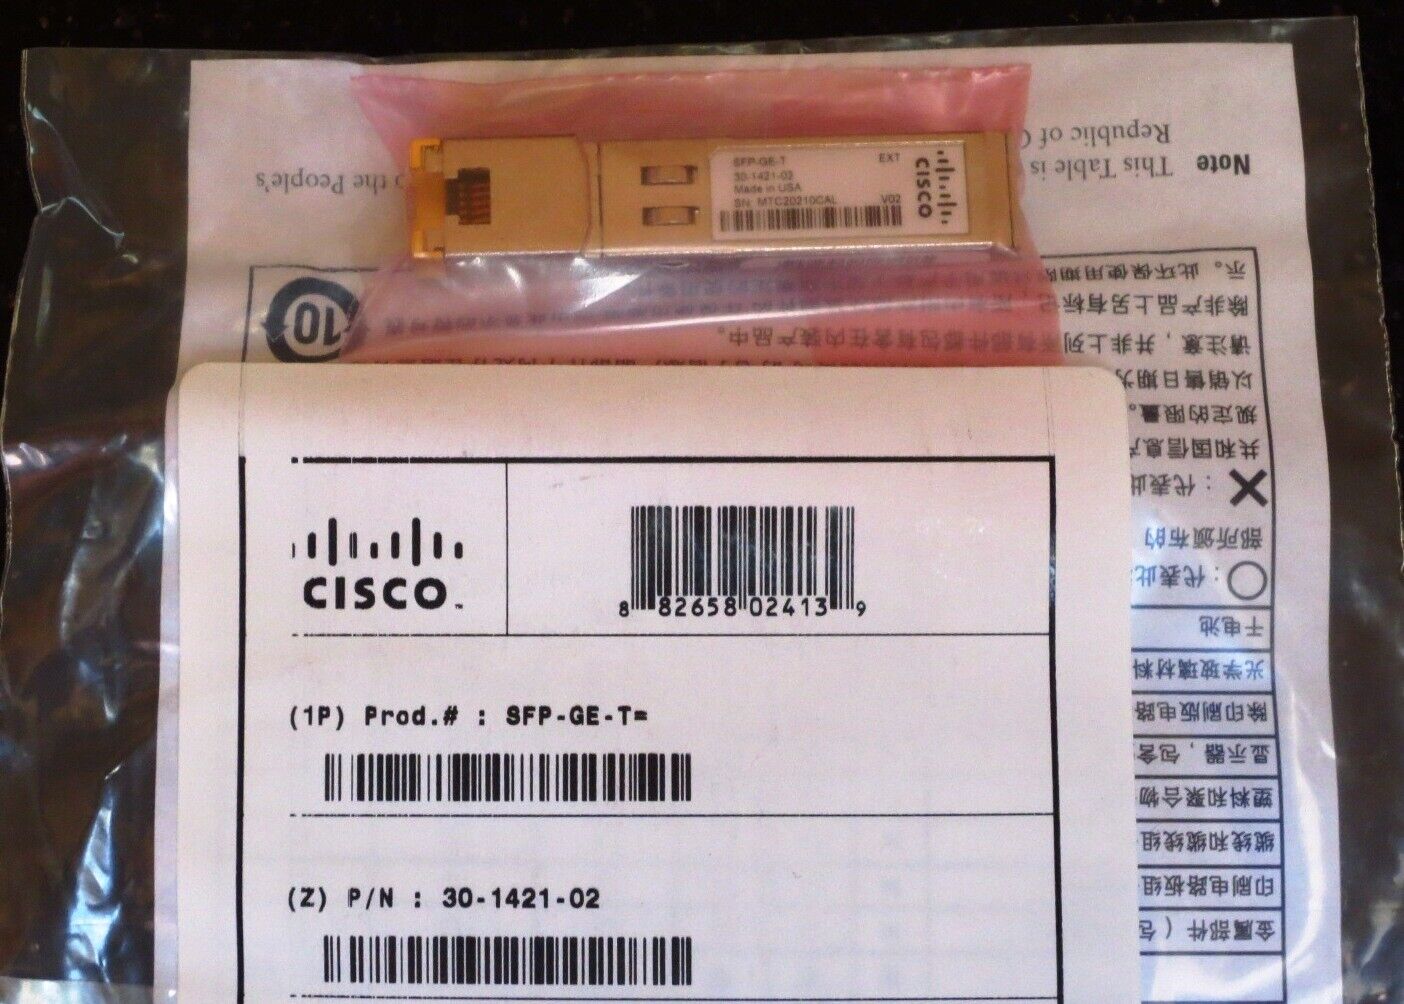 New SEALED Cisco Genuine SFP Transceiver Module SFP-GE-T EXT 30-1421-02 RJ-45